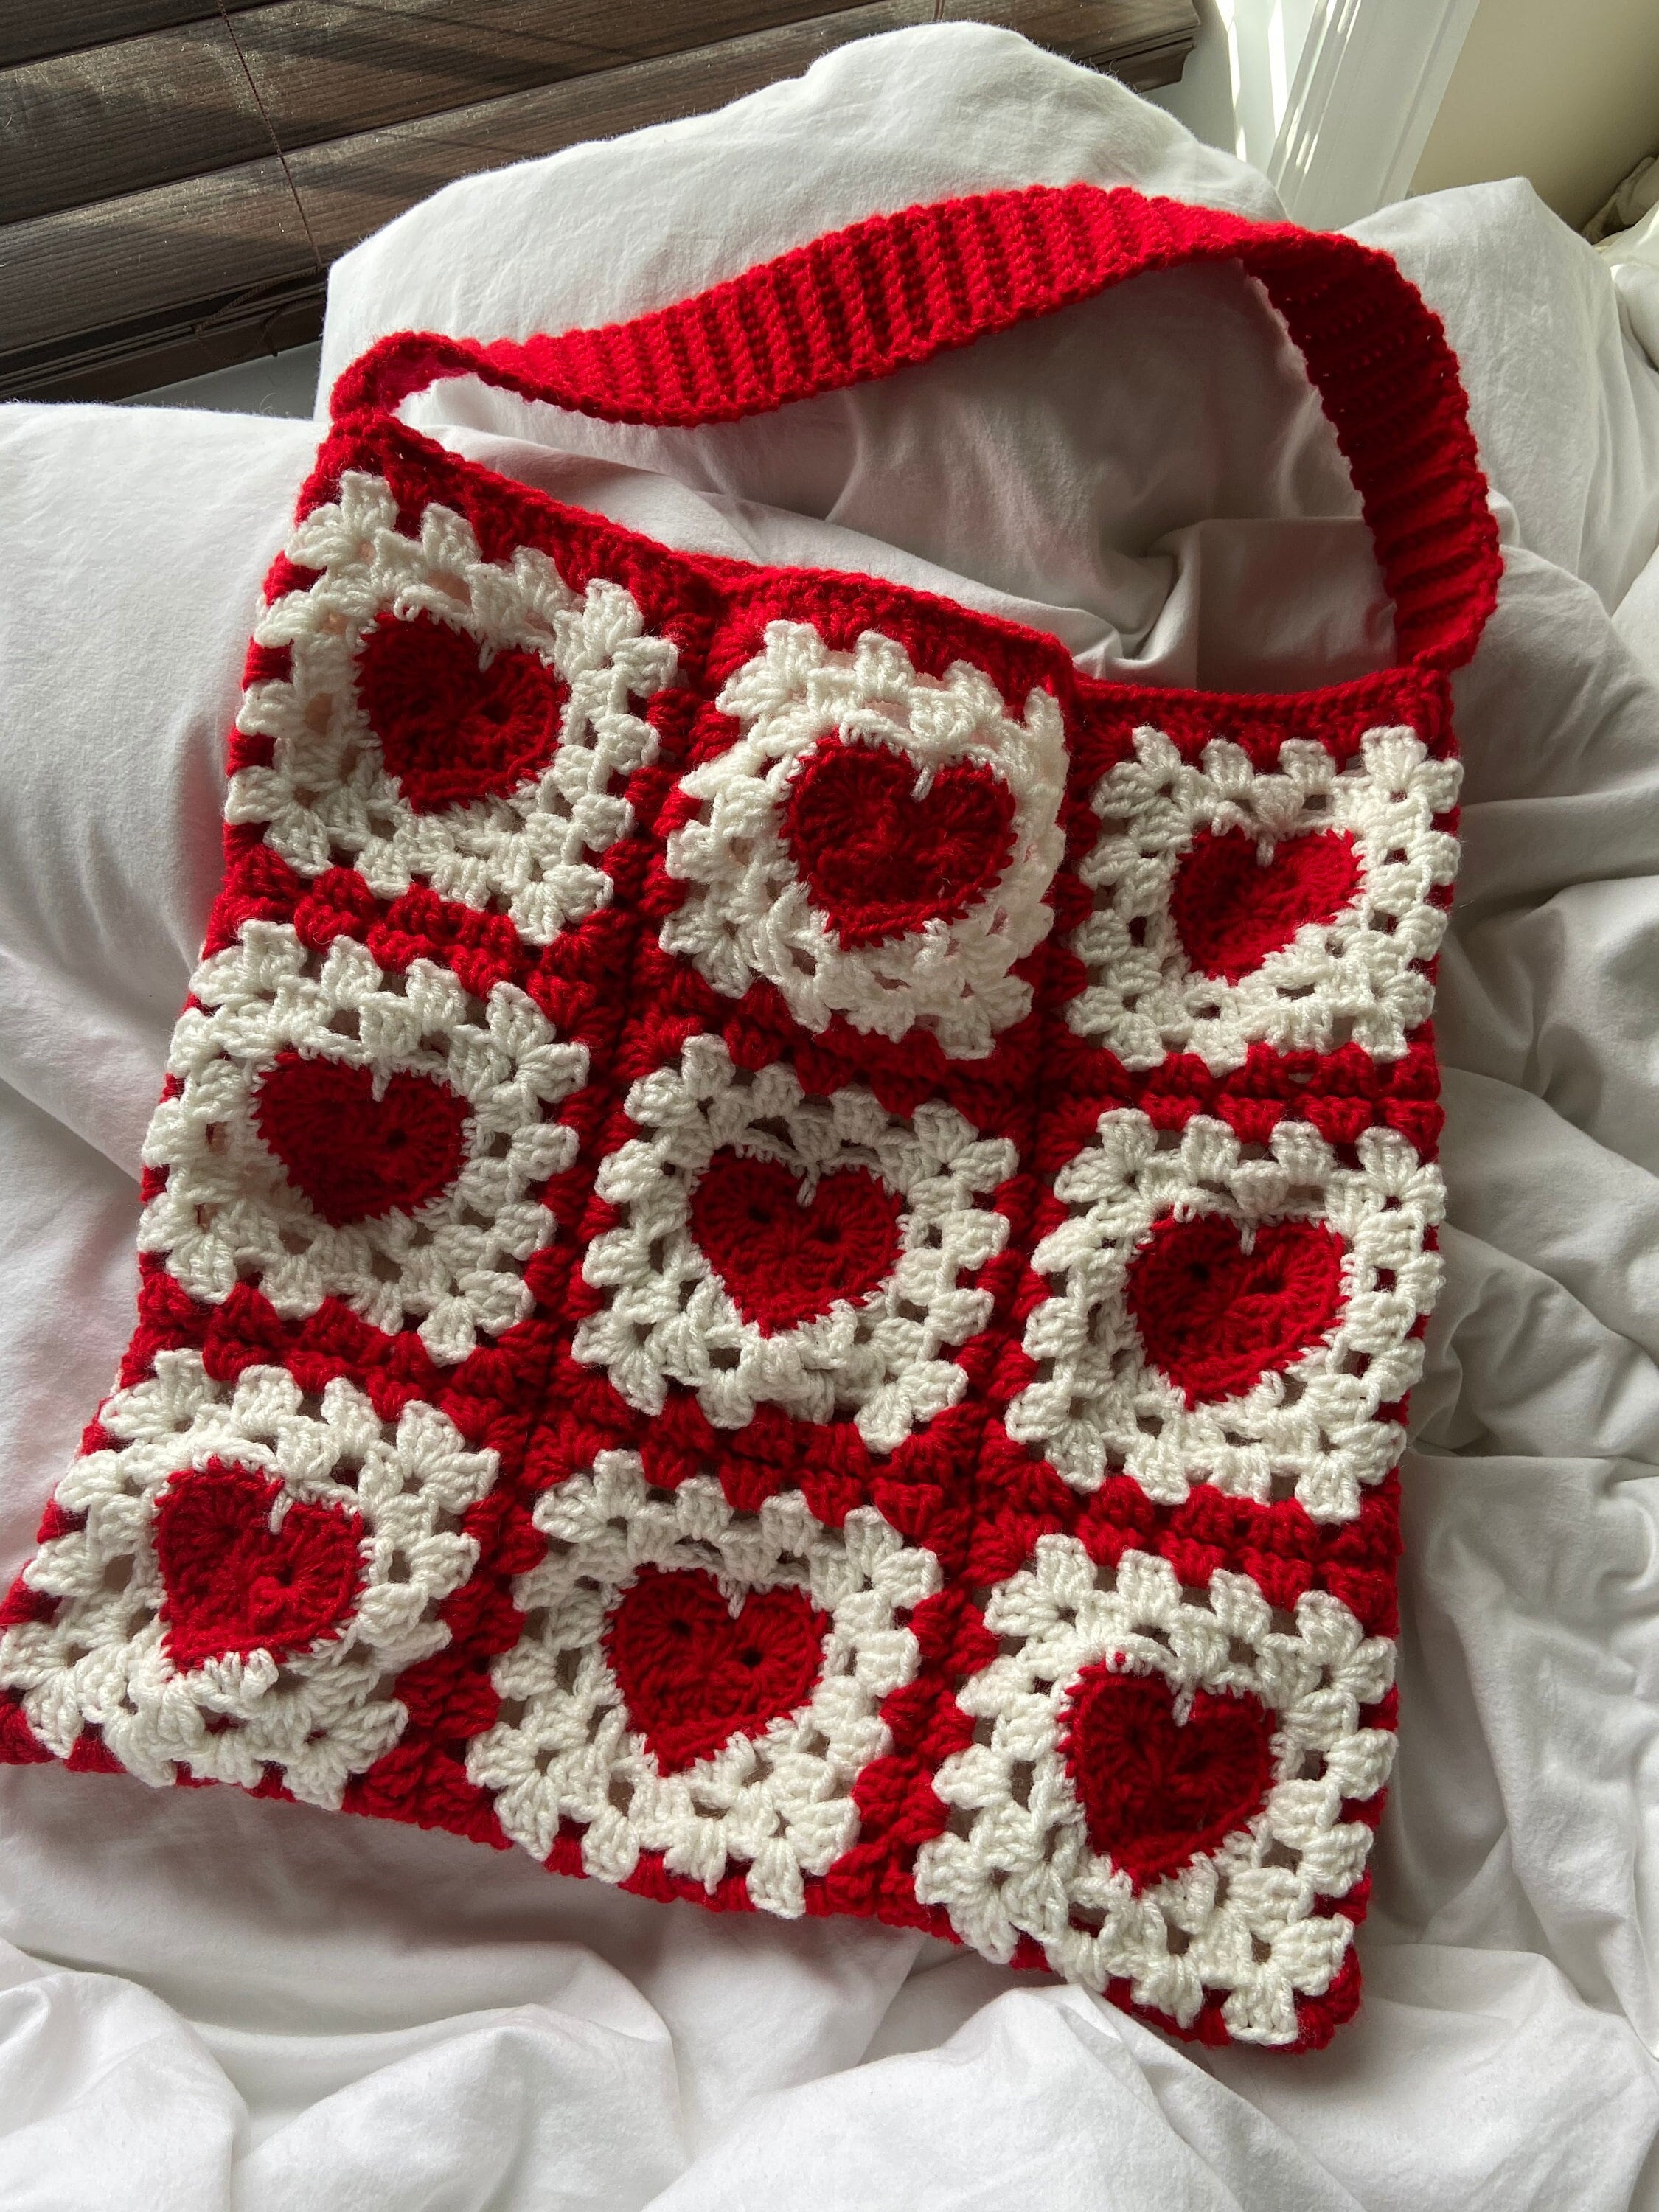 crochet heart tote bag free pattern